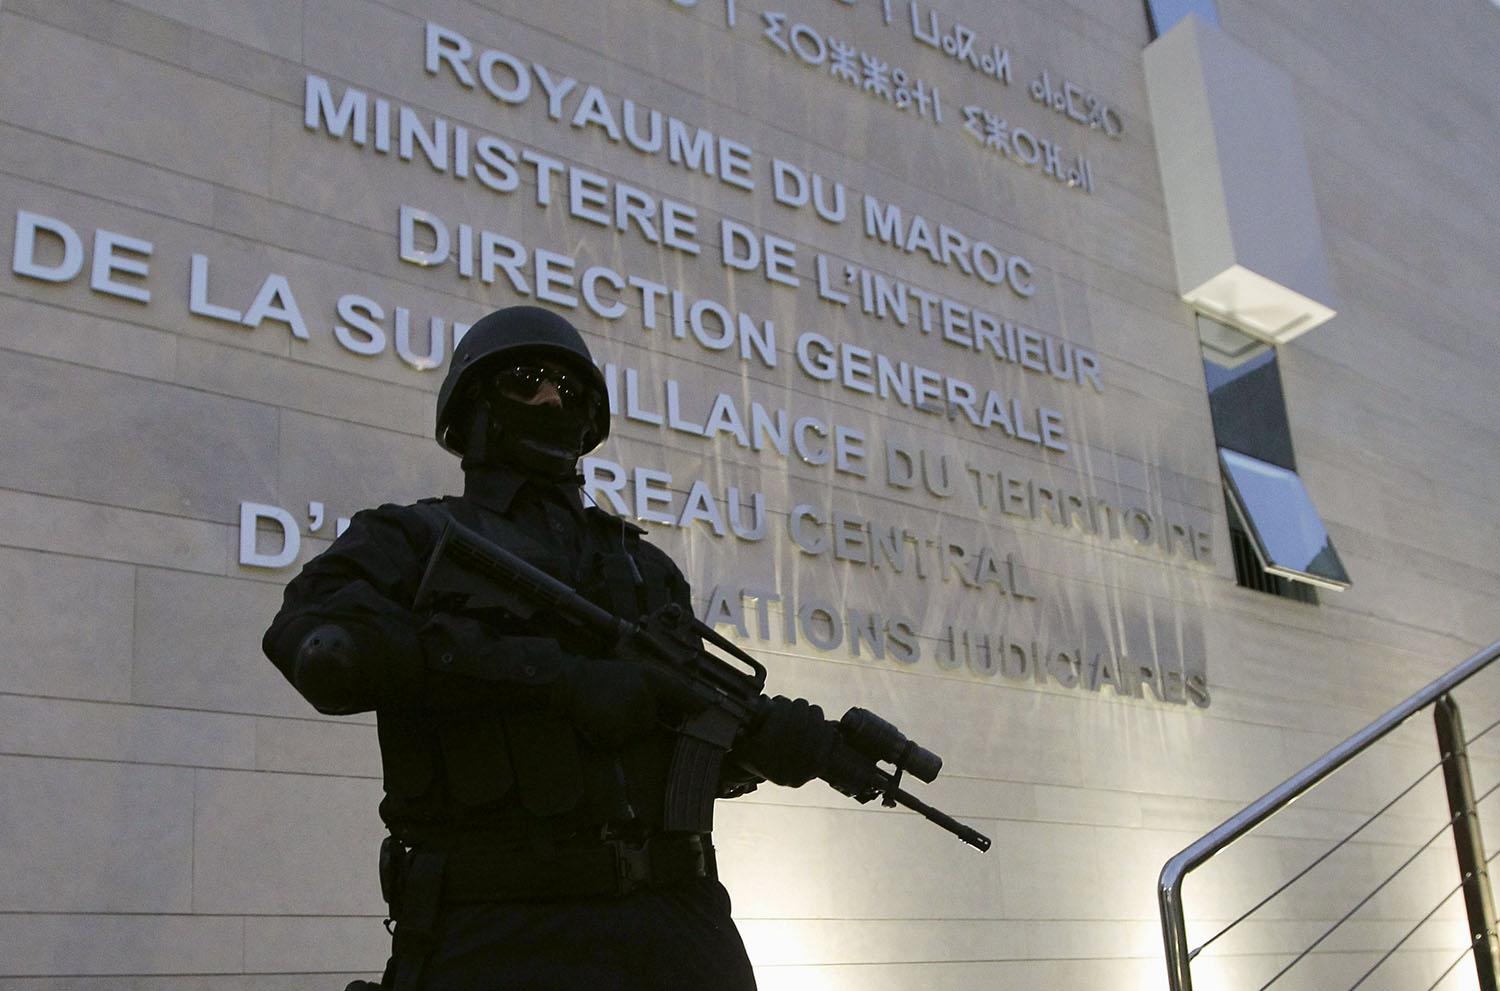 التعاون الأمني الدولي ركن اساسي في استراتيجية المغرب لمكافحة الارهاب